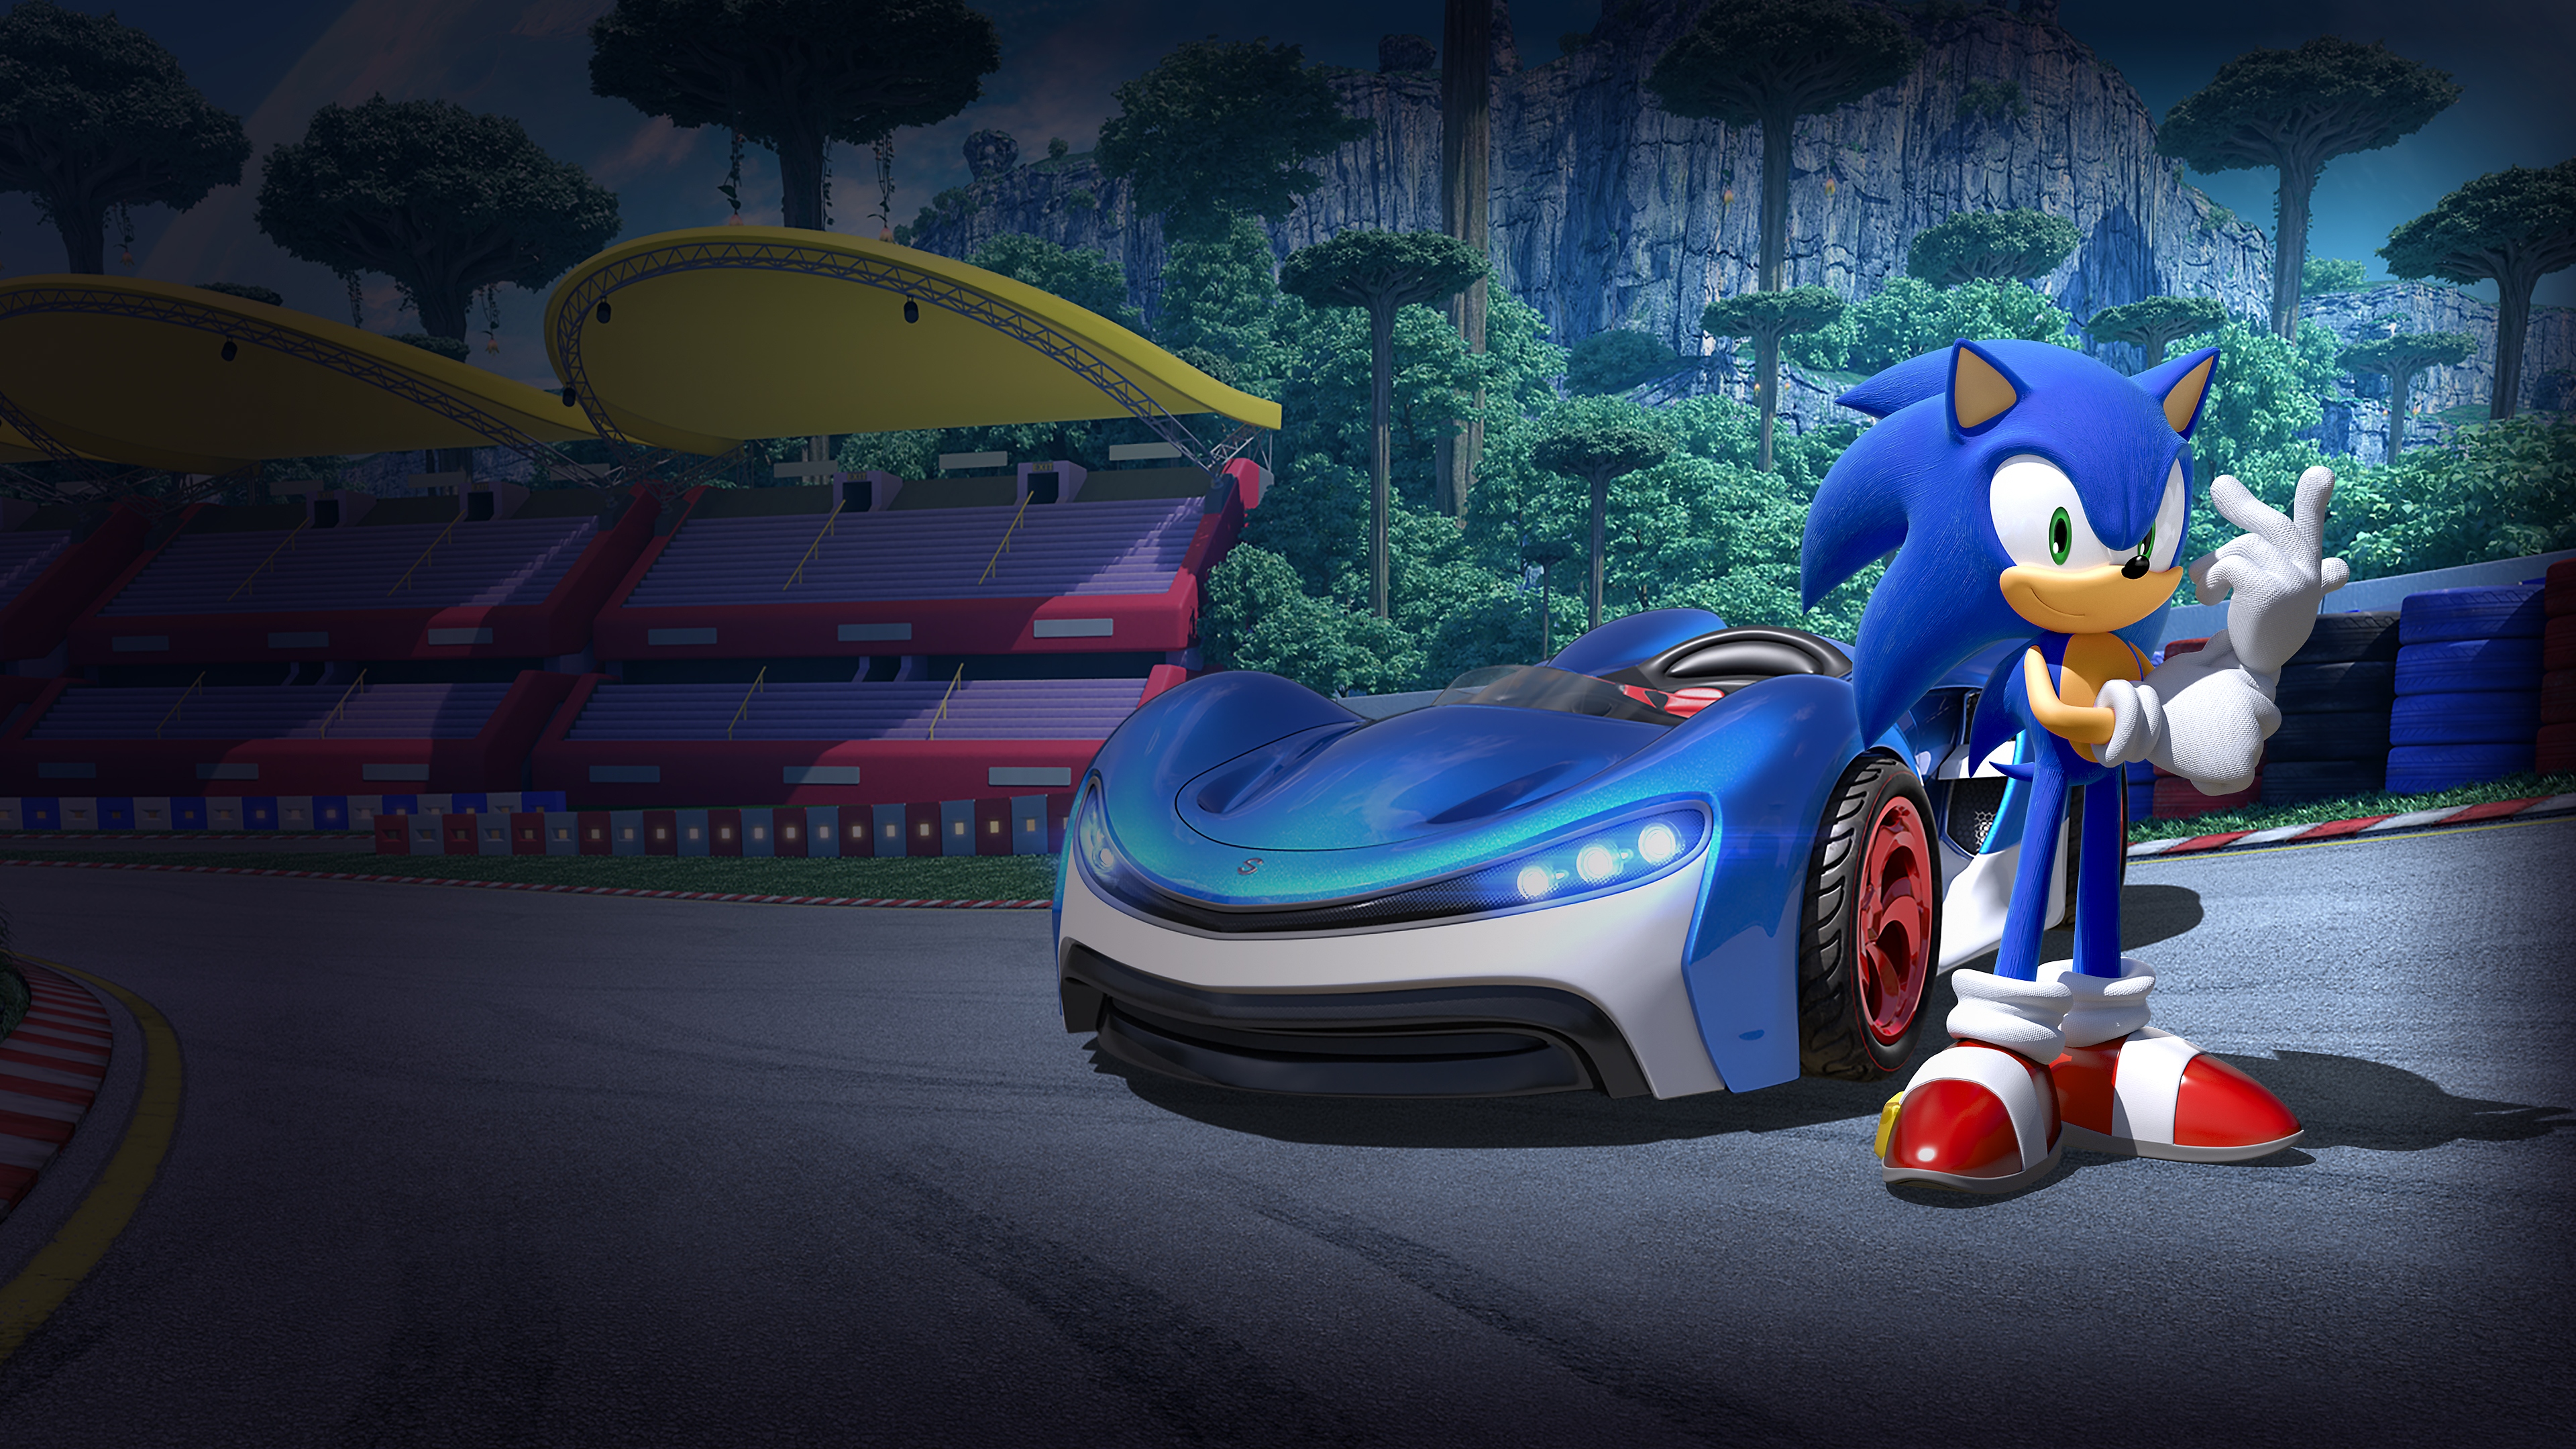 Team Sonic Racing – helteillustrasjon